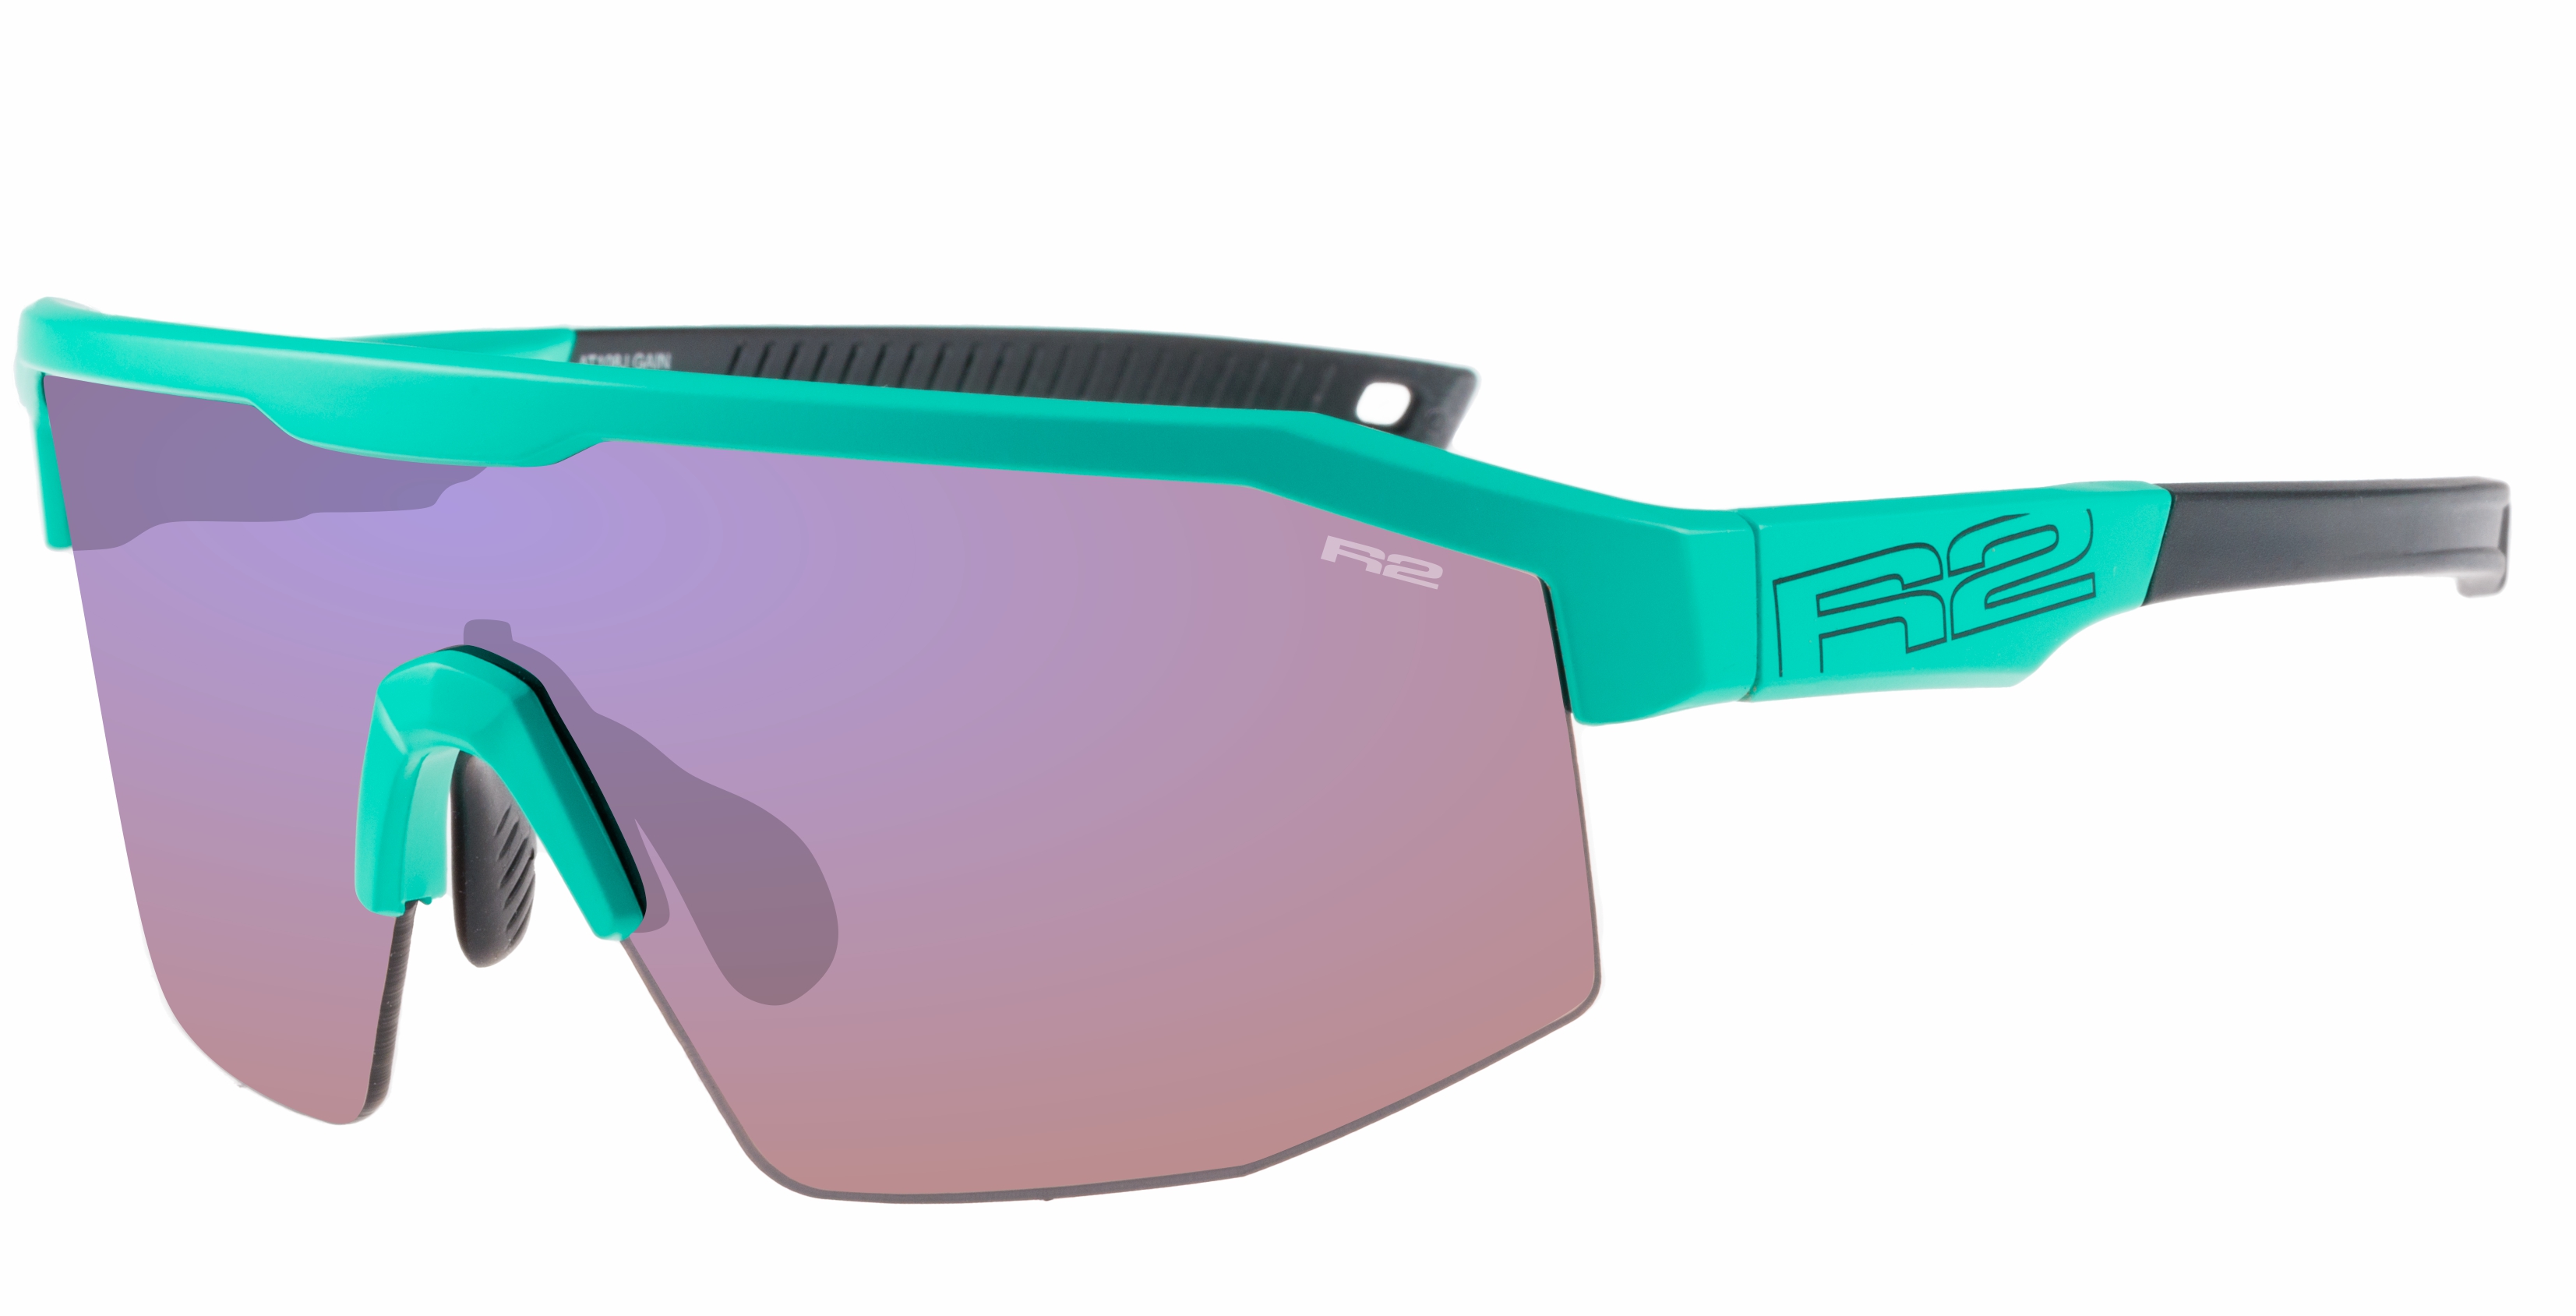 HD sport sunglasses R2 GAIN AT108J